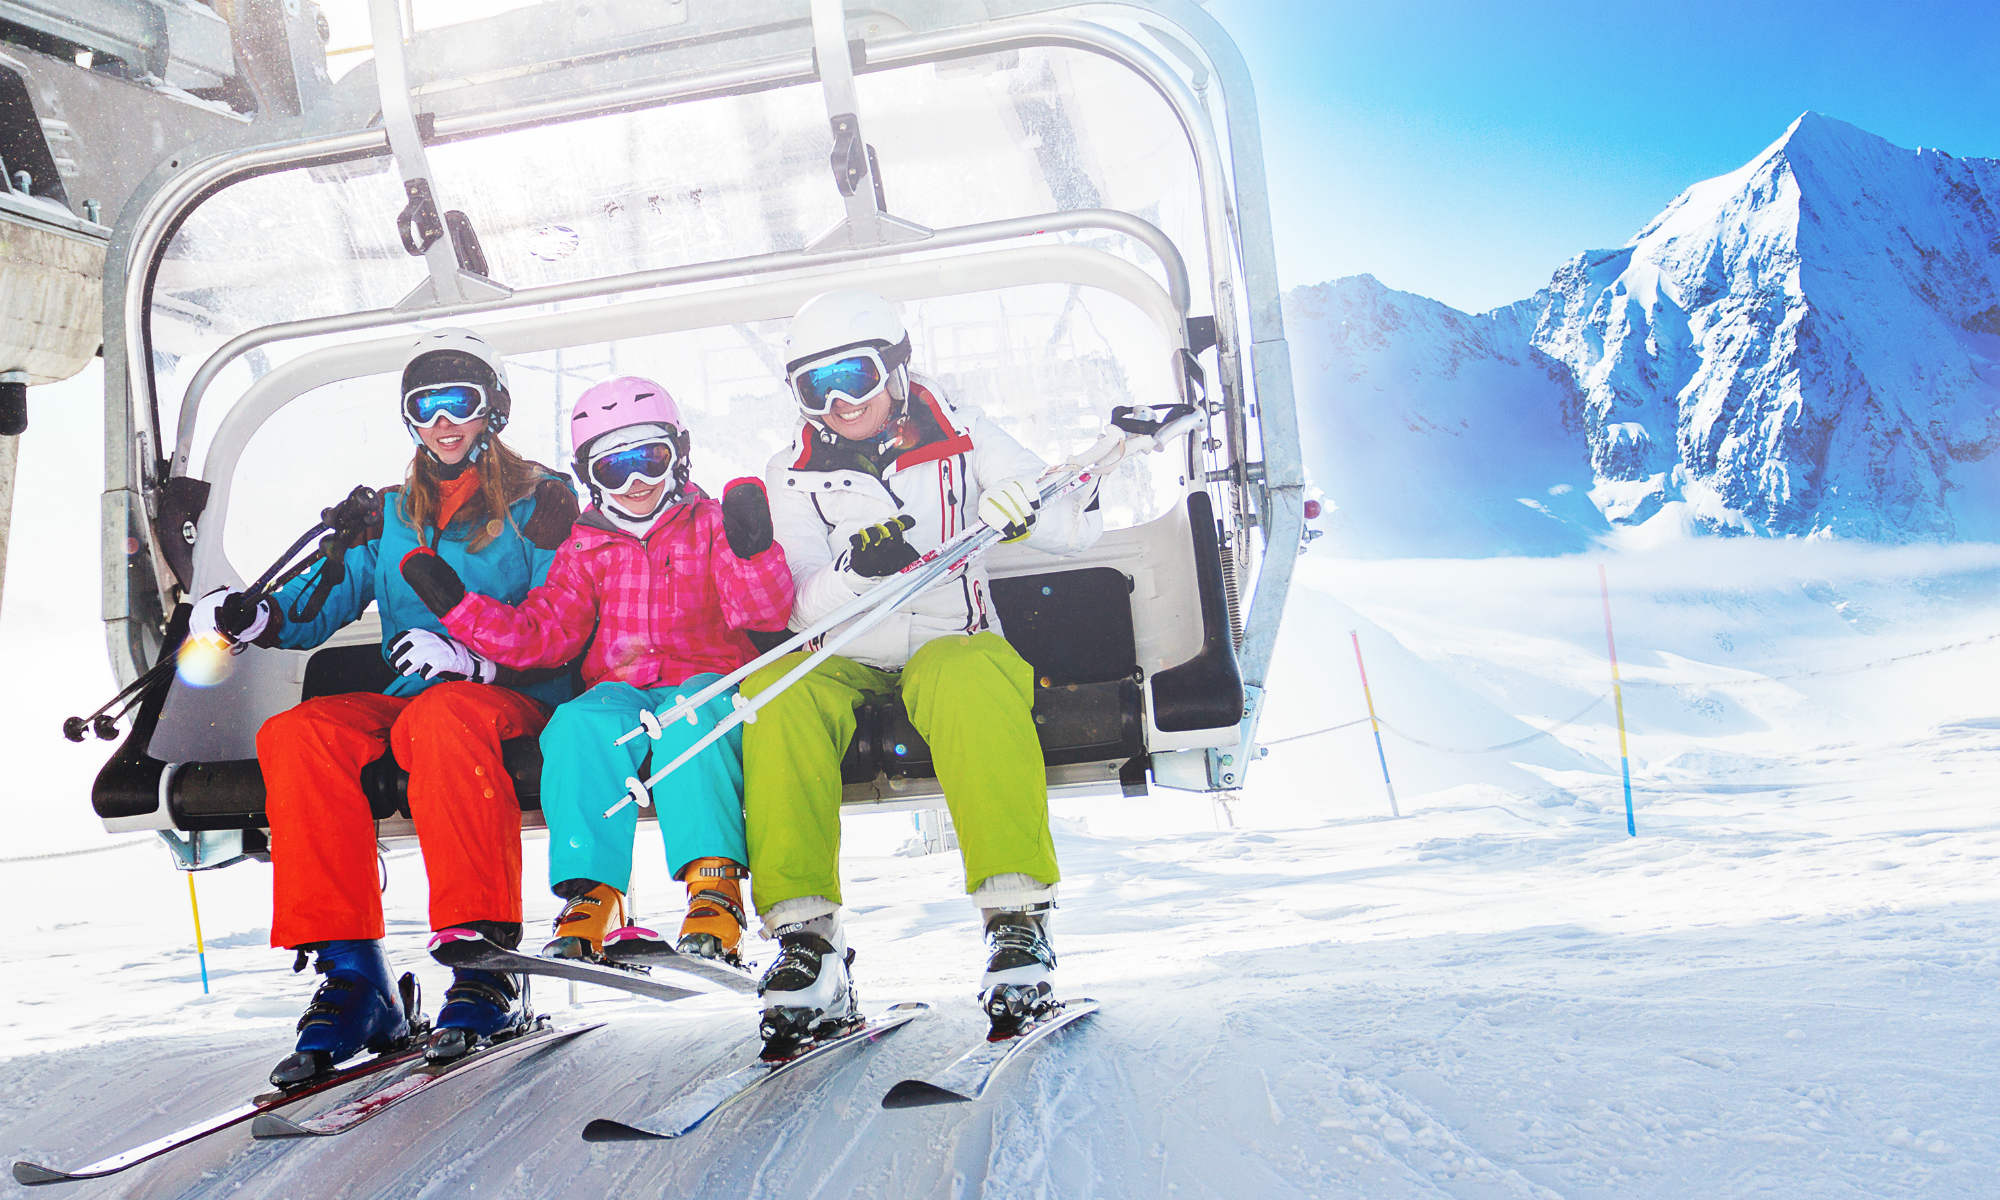 La seggiovia è uno degli impianti di risalita più popolari tra gli sciatori.